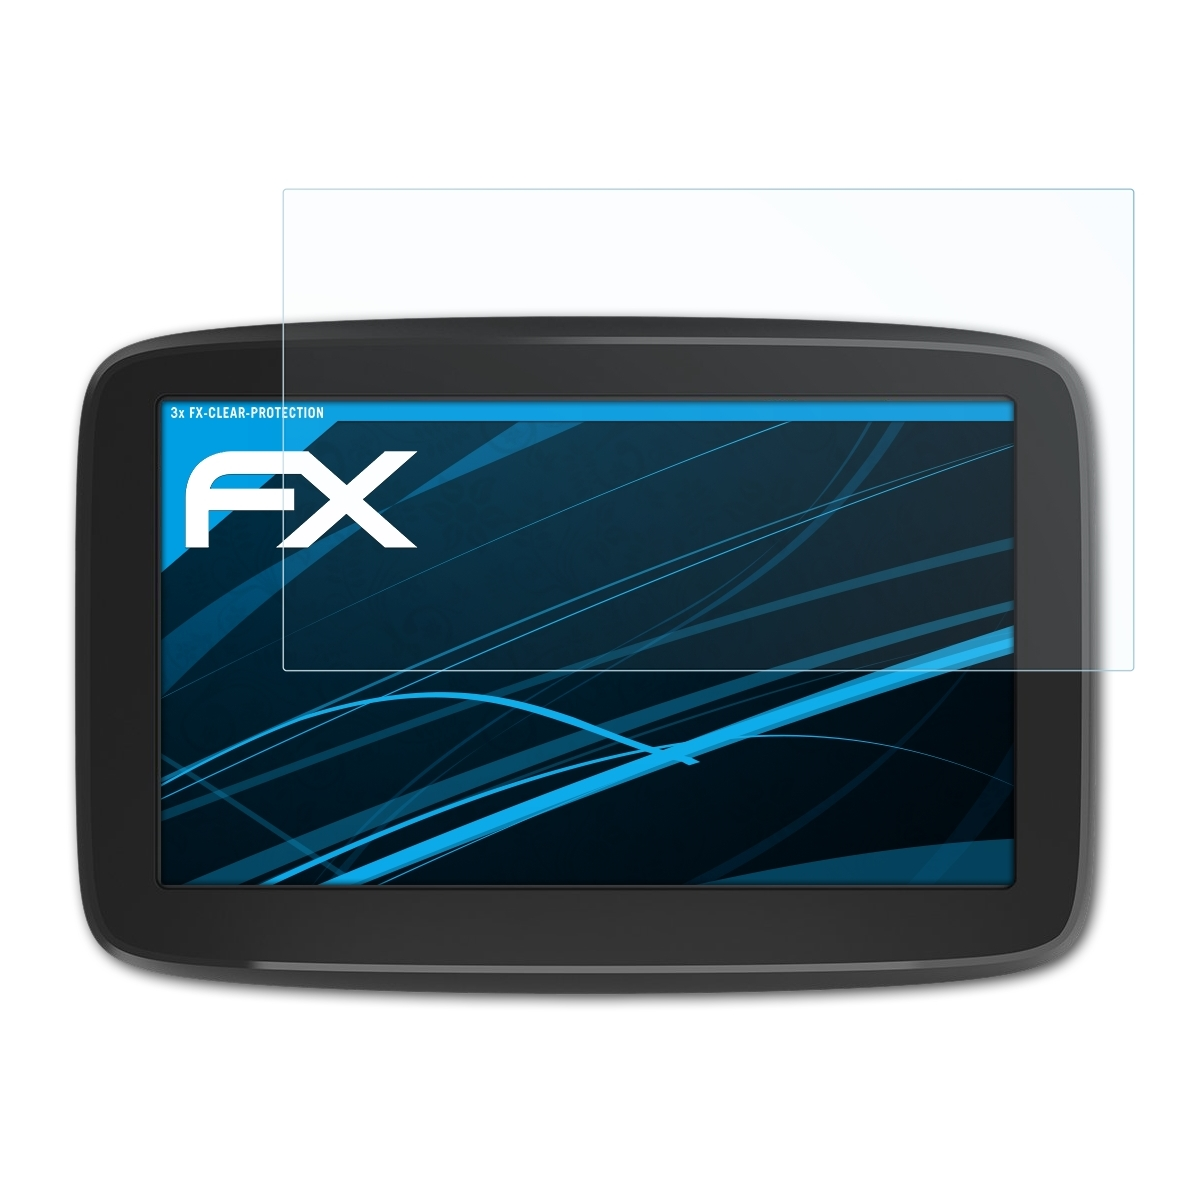 ATFOLIX 3x (6 GO inch)) TomTom Basic Displayschutz(für FX-Clear